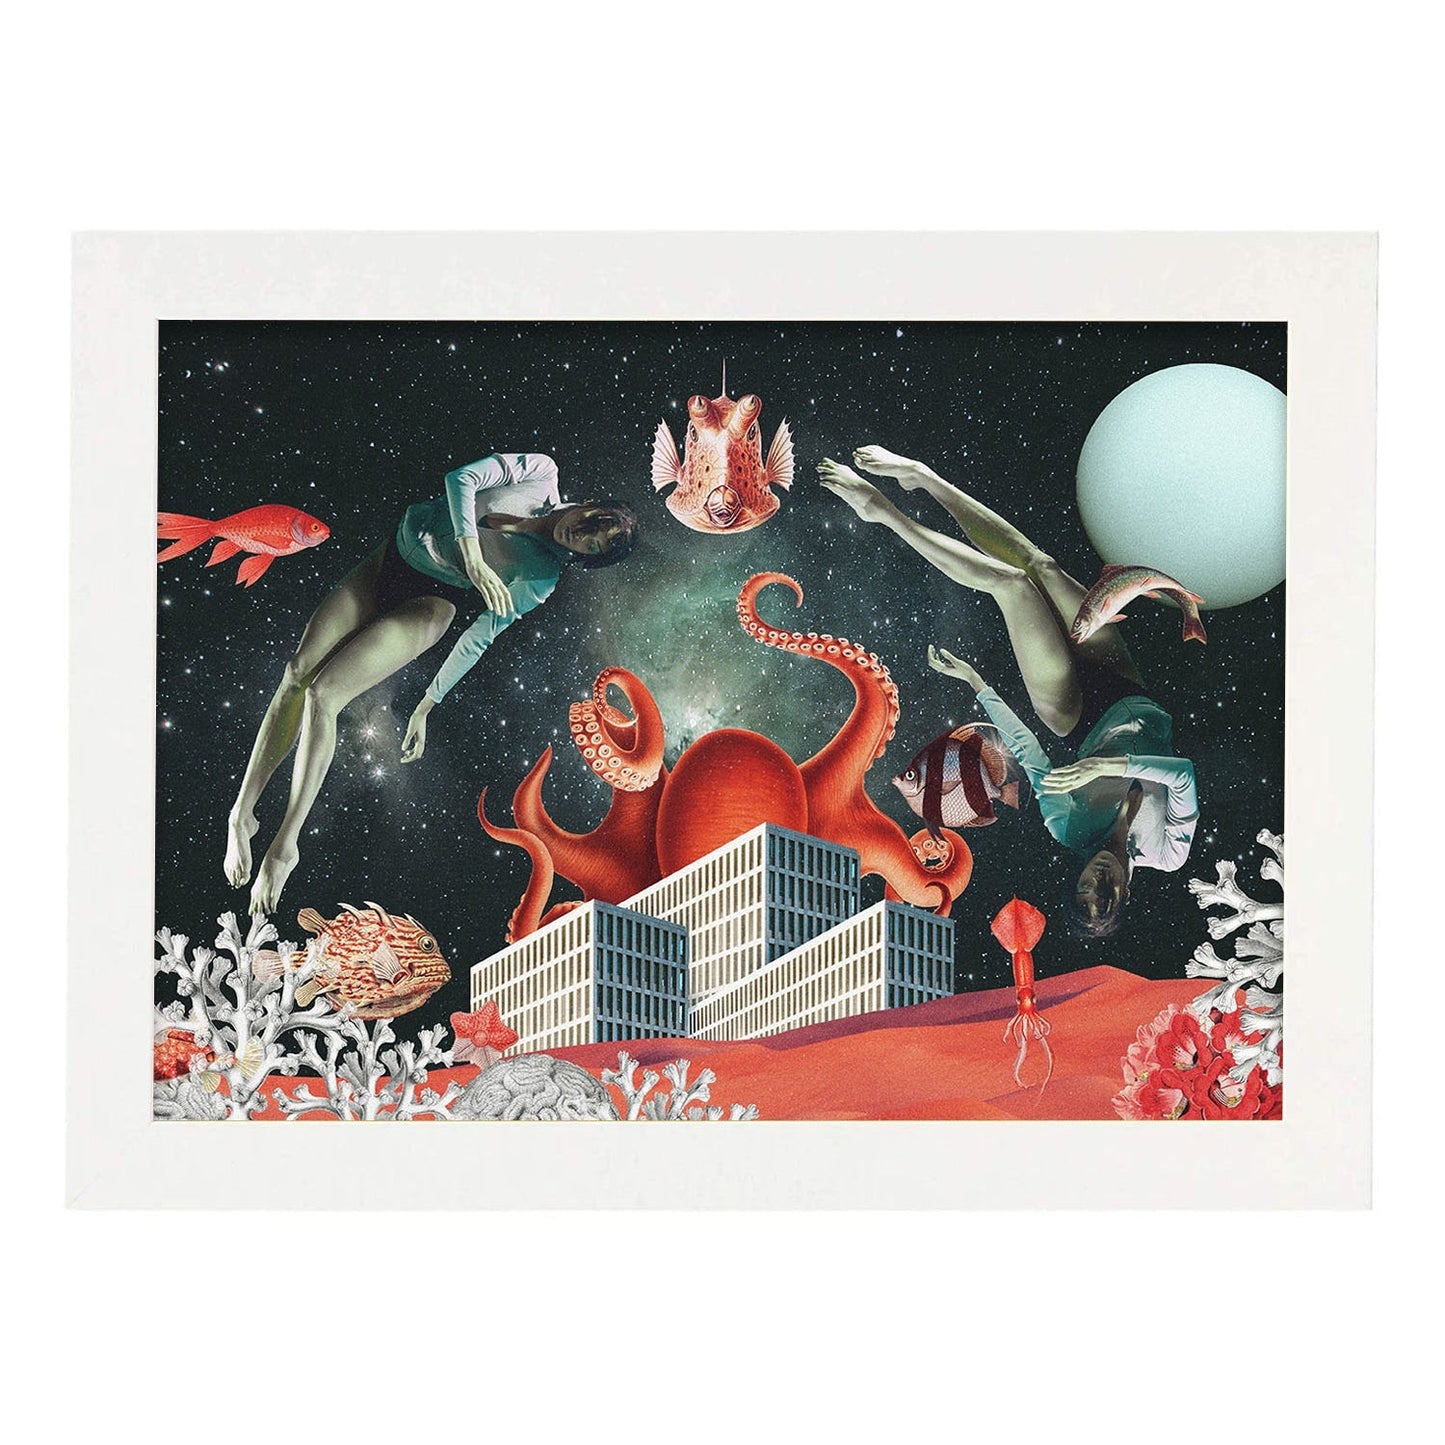 Lamina artistica decorativa con ilustración de Sea Space estilo Collage-Artwork-Nacnic-A4-Marco Blanco-Nacnic Estudio SL